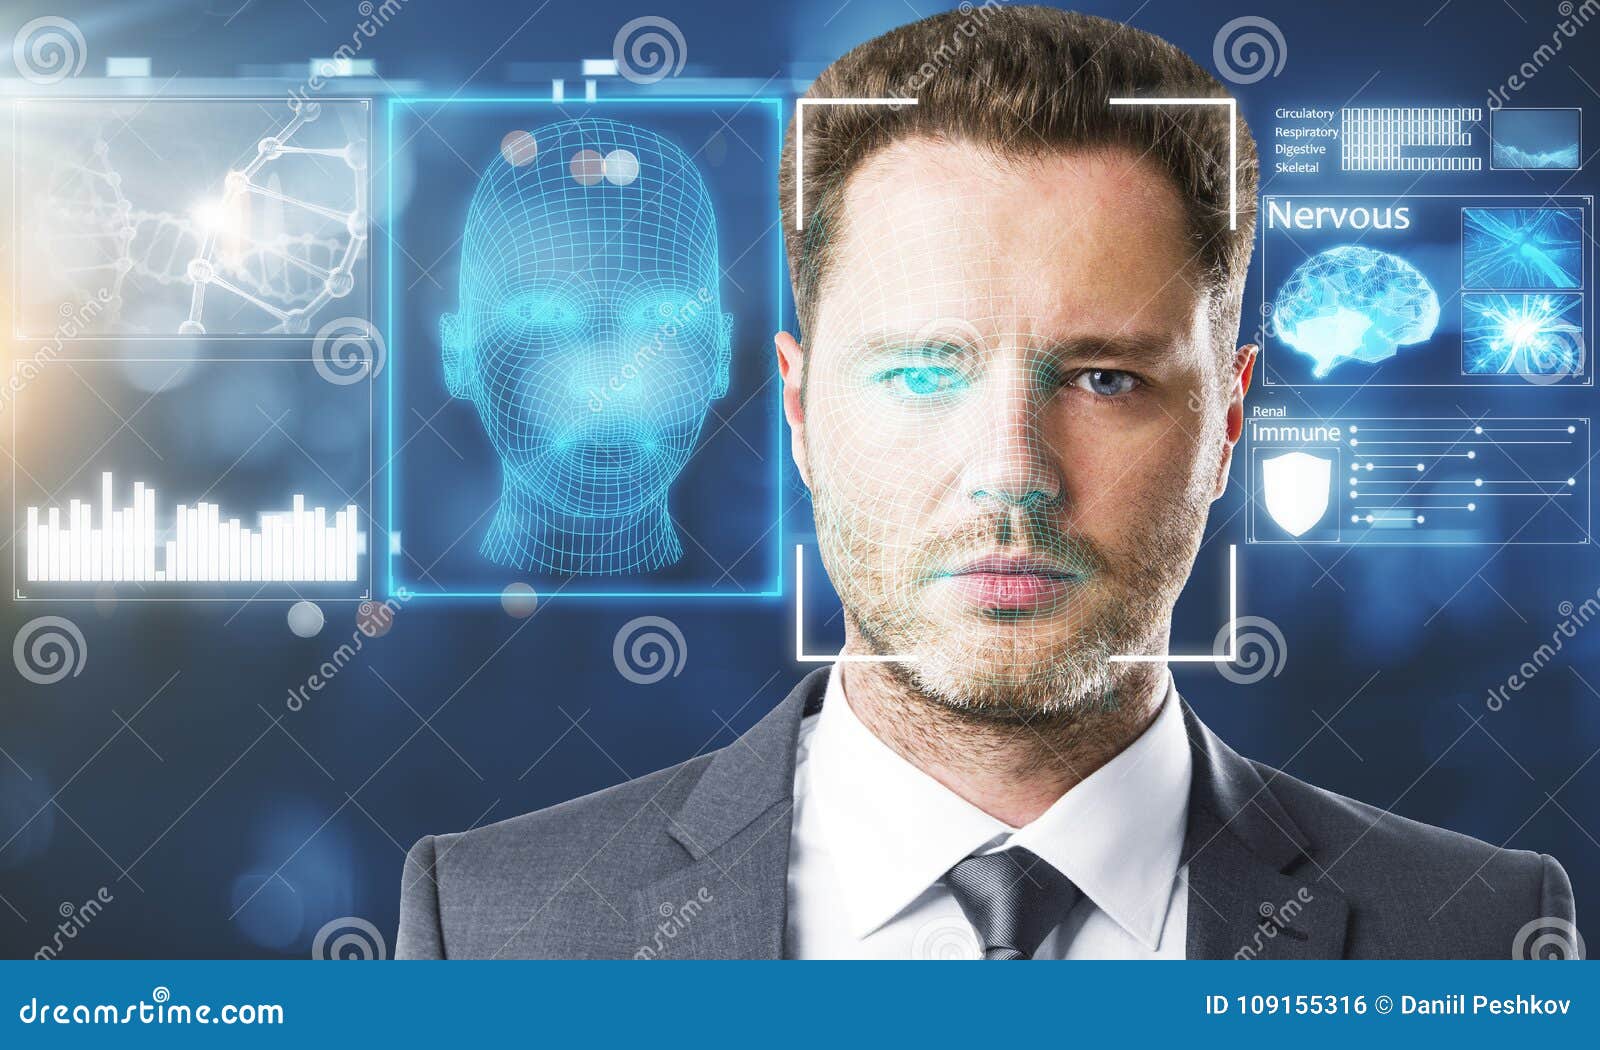 face recognition concept